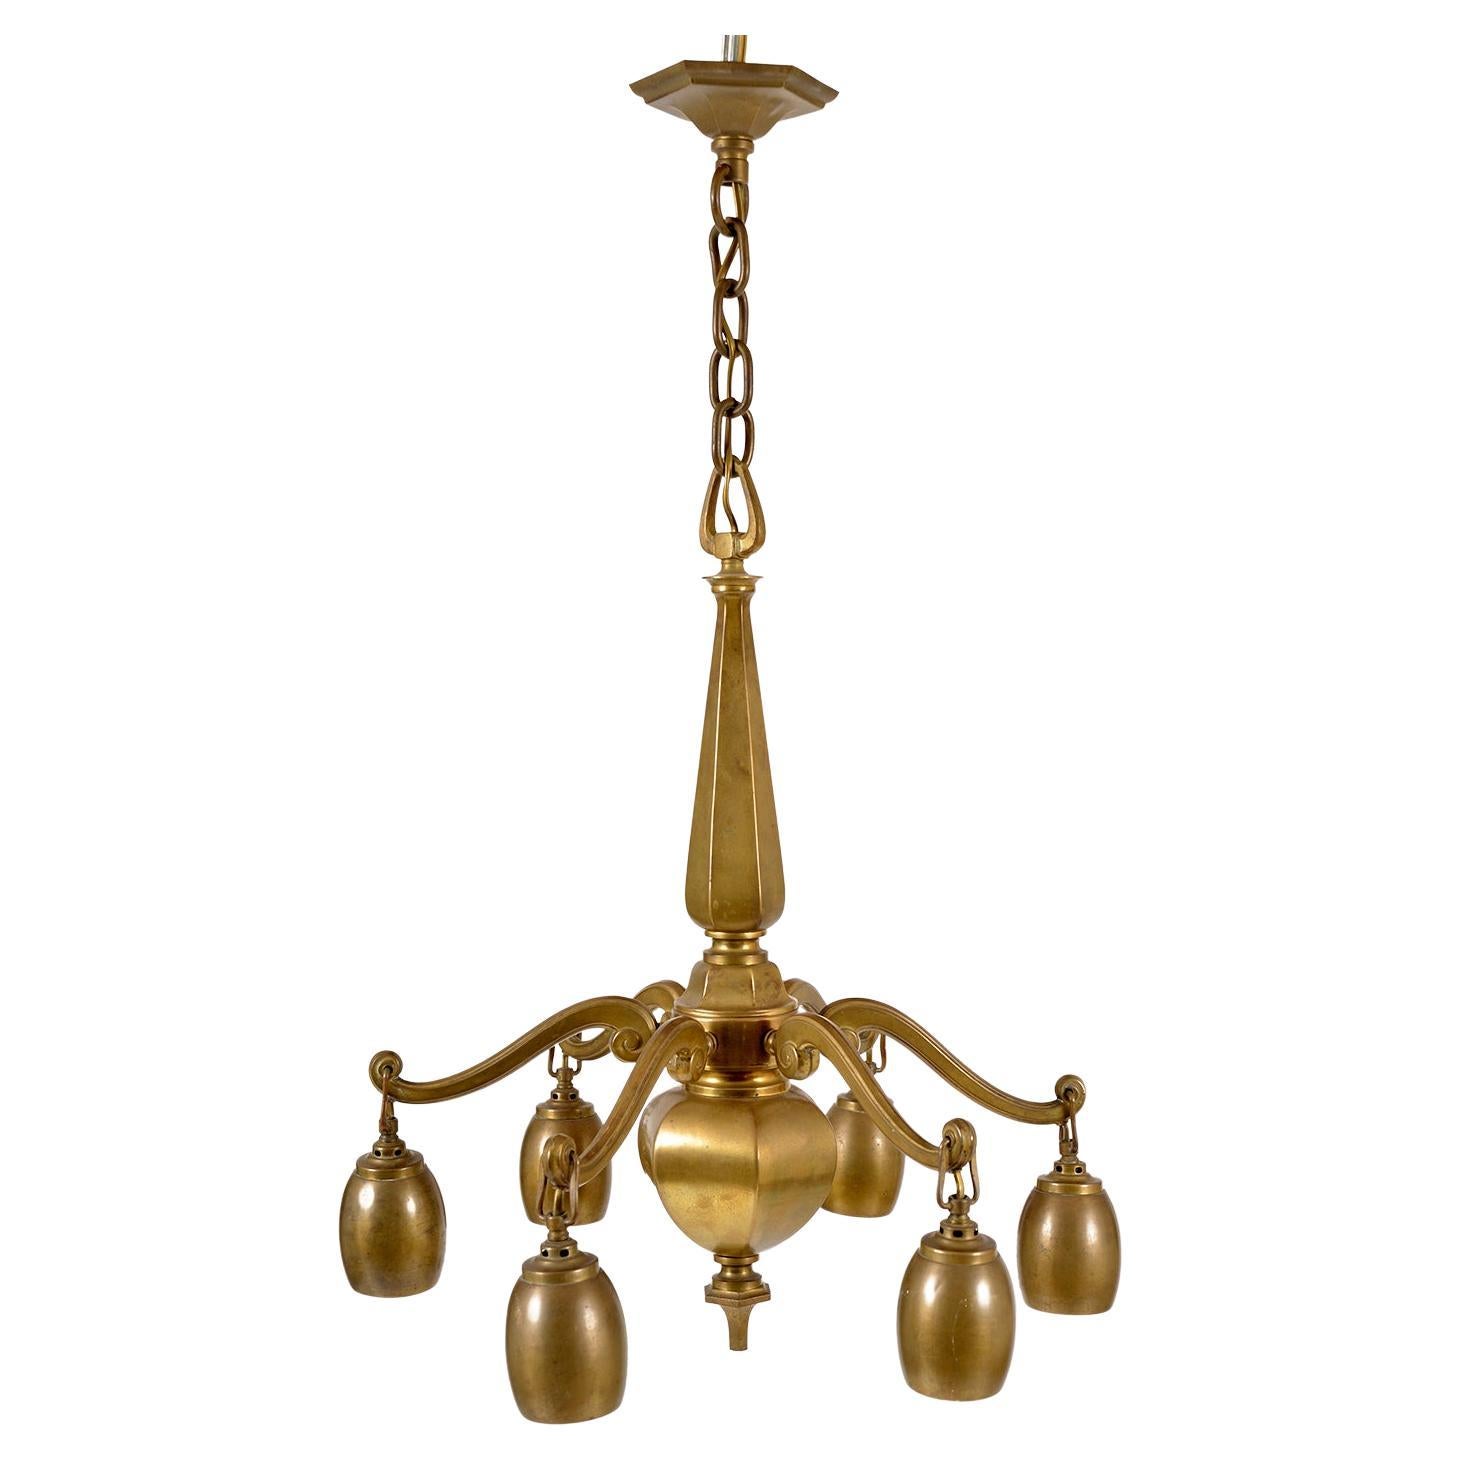 1920s Bohemian Art Deco Jugendstil Solid Brass 6-Arm Ceiling Pendant Chandelier